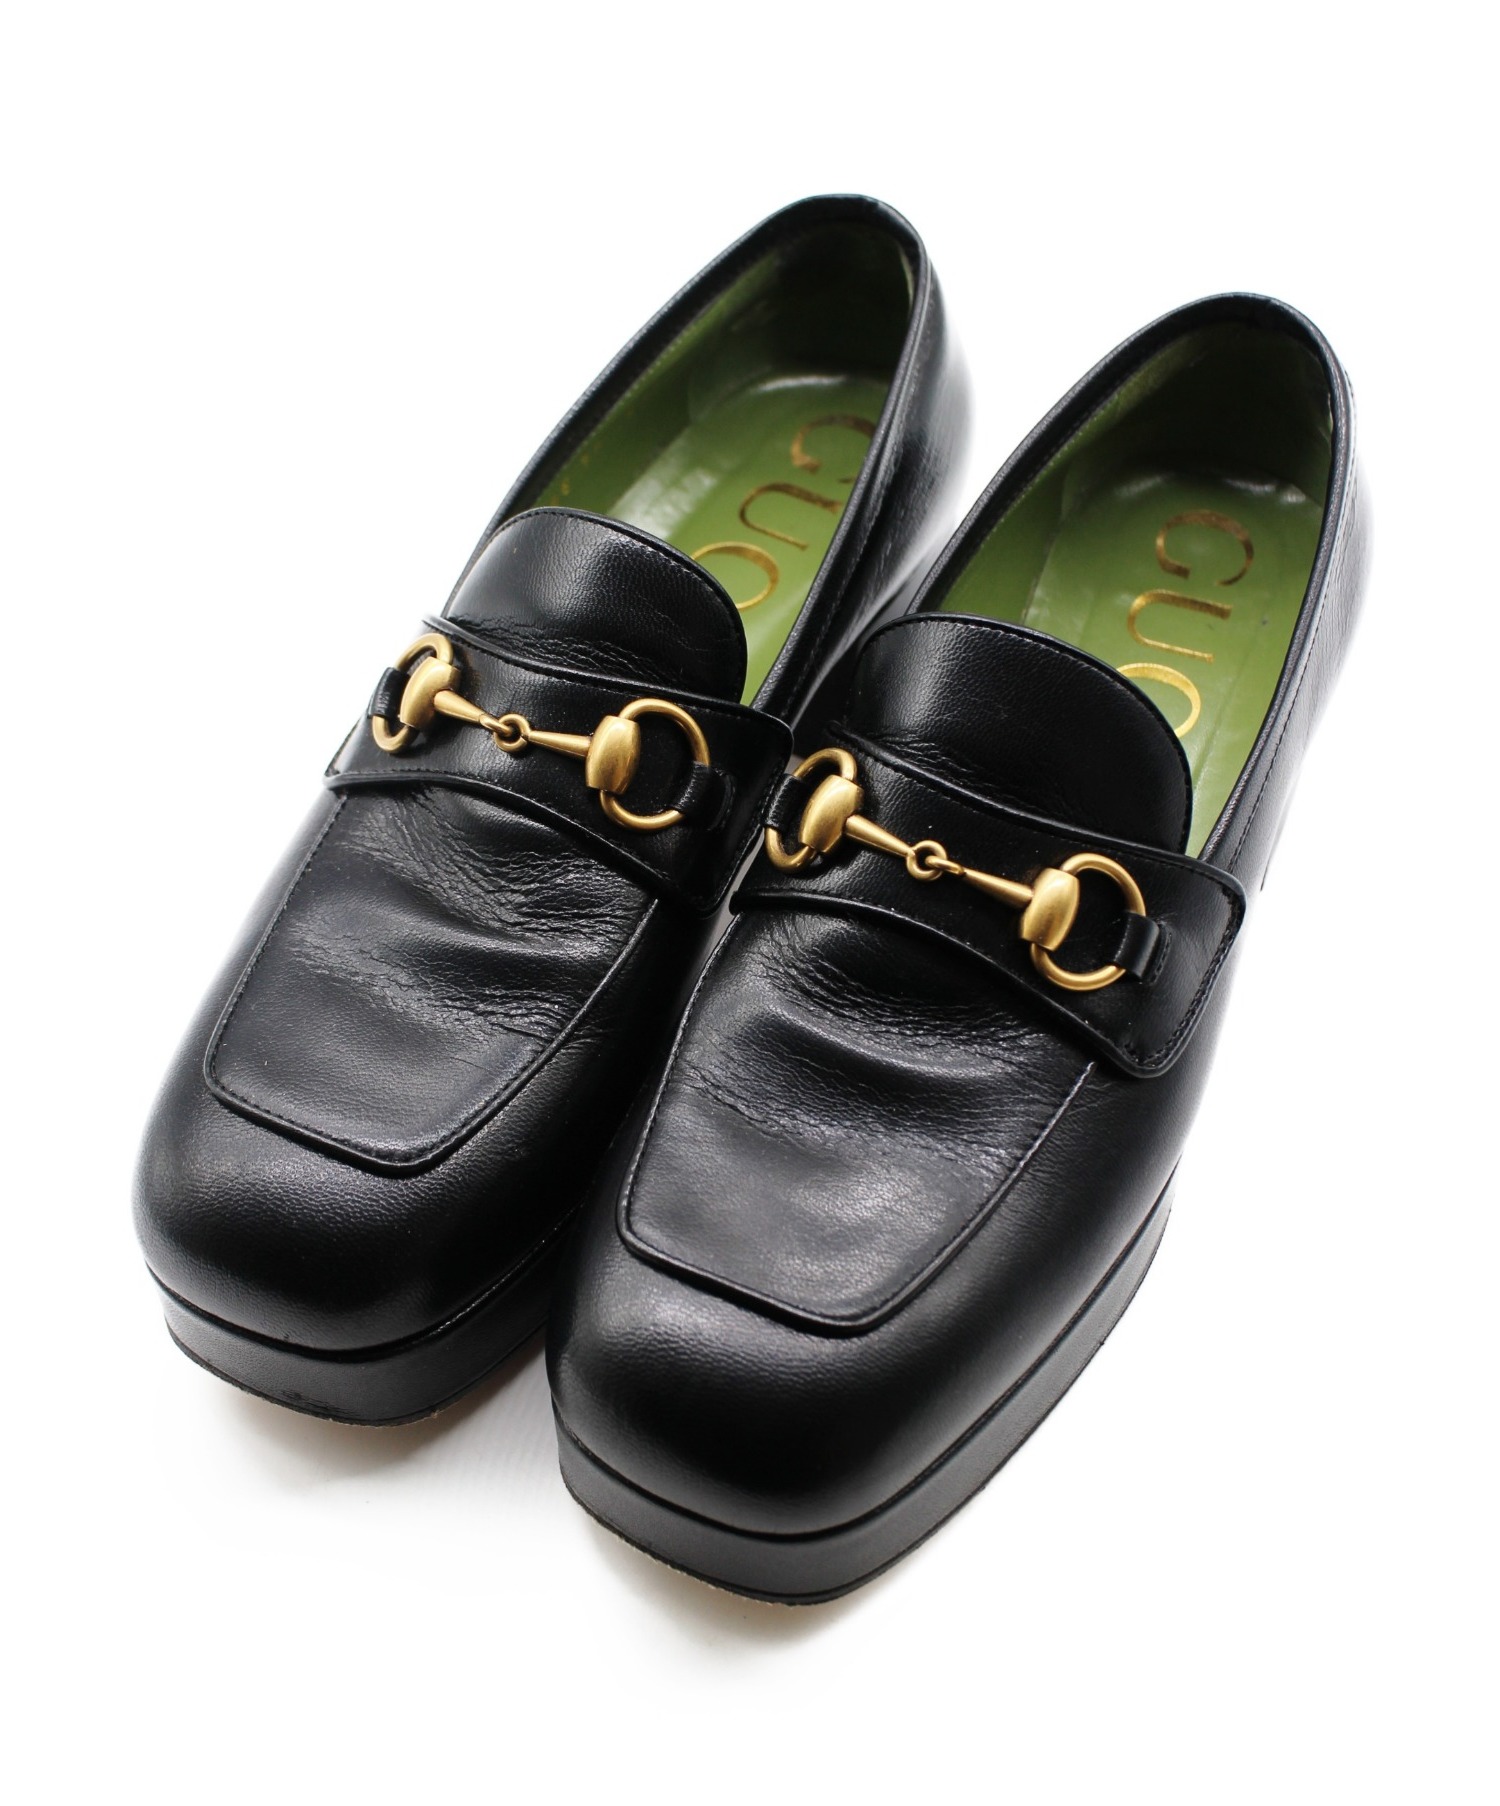 Vintage グッチ パンプス ローファー ホースビット レザー シューズ 靴 レディース 5.5B(22.5cm相当) ブラック